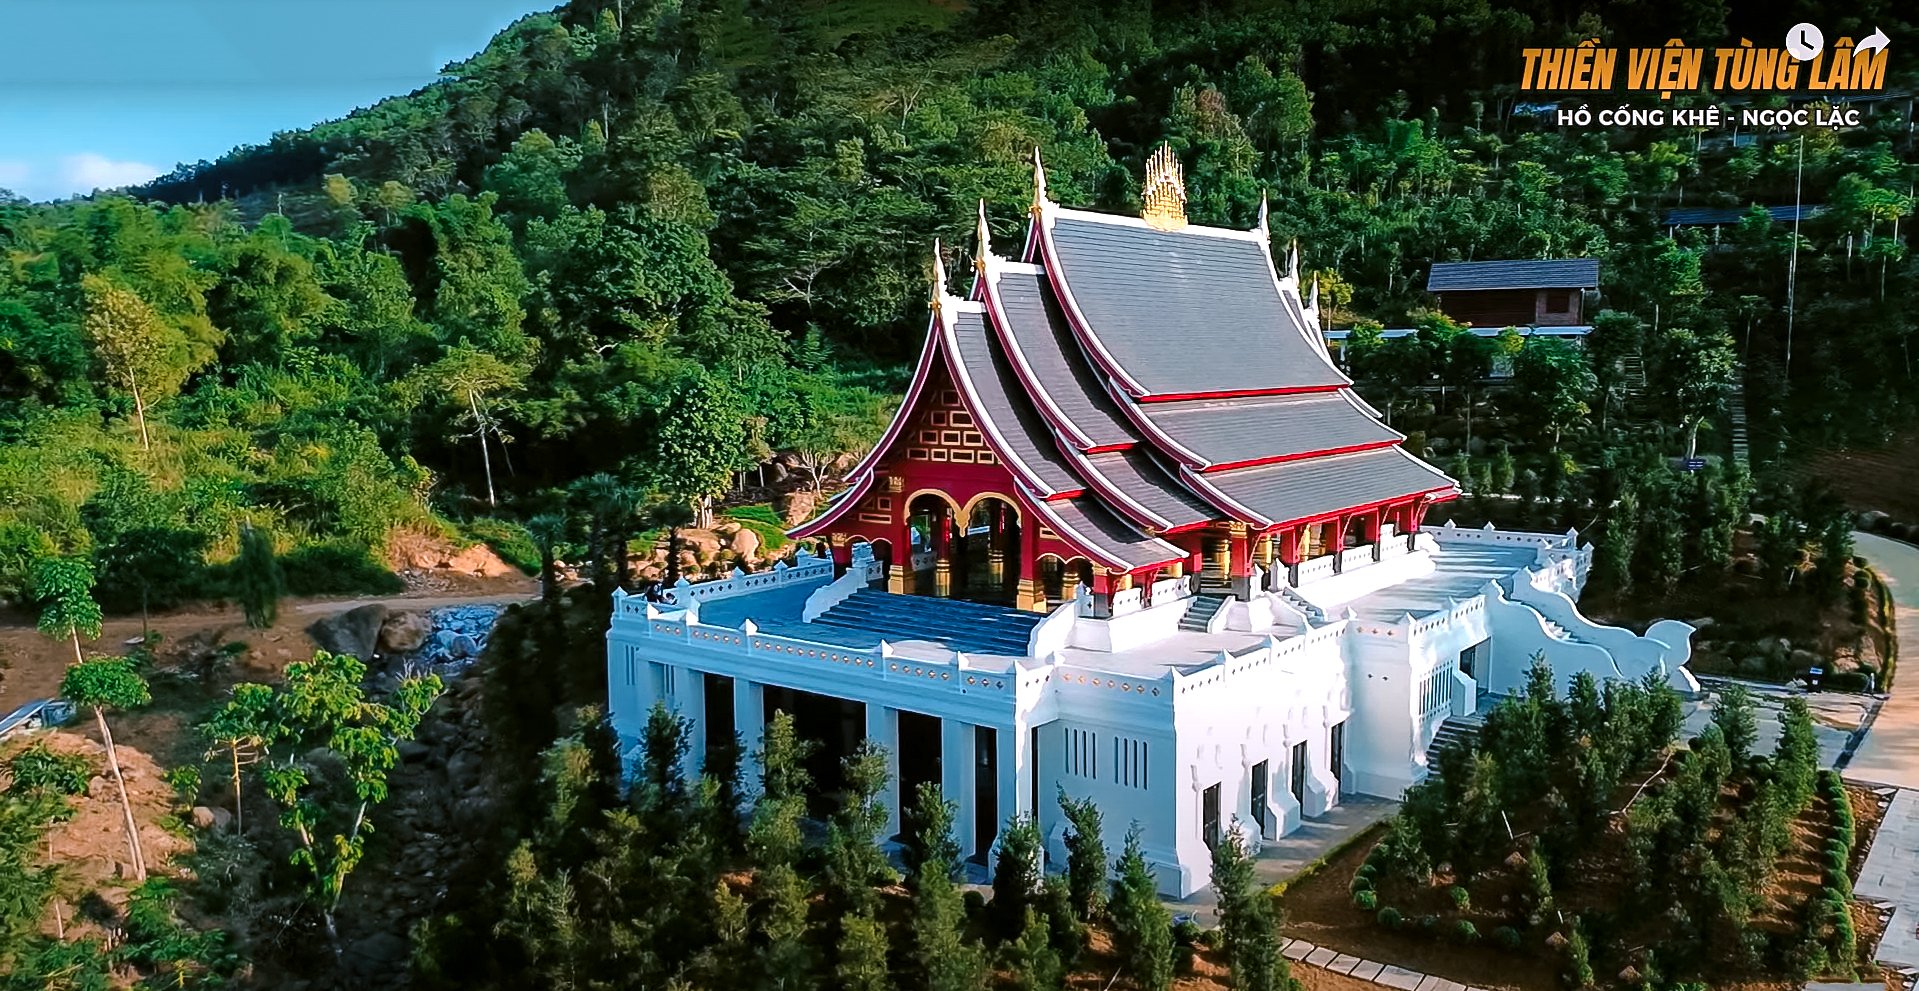 Quy hoạch thiết kế cảnh quan Thiền viện Tùng Lâm 